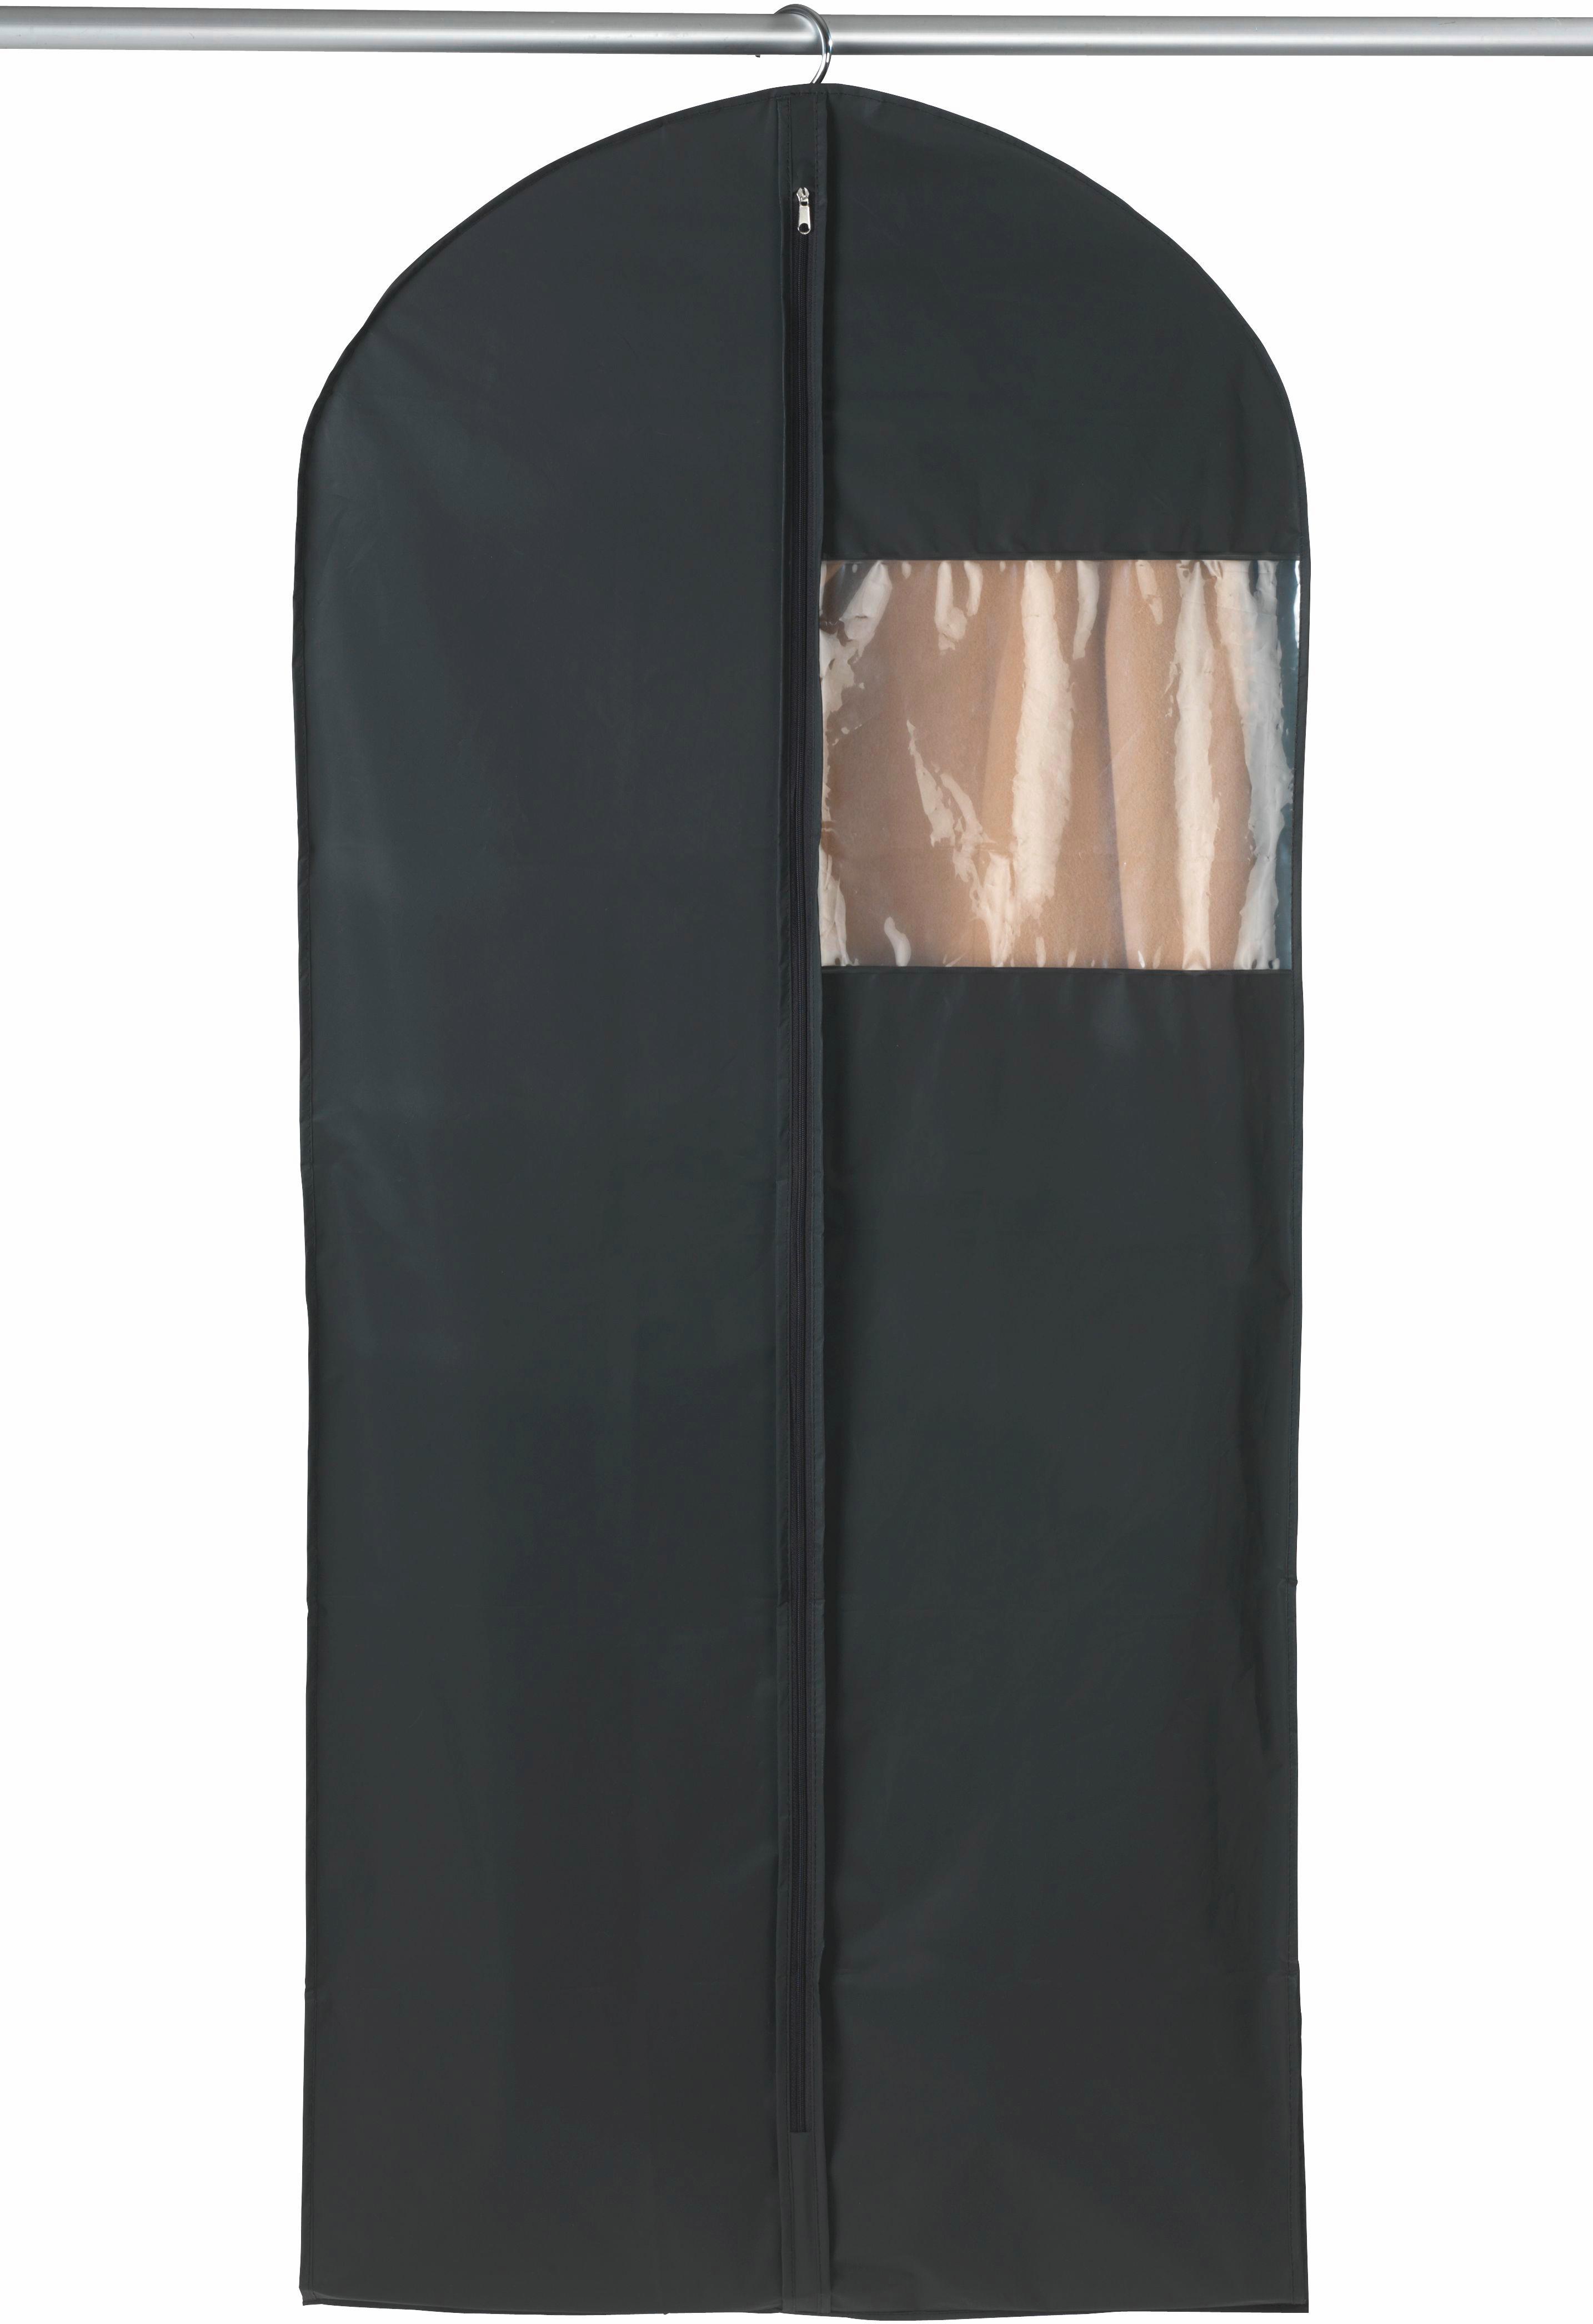 WENKO Kleiderschrank »Deep Black«, Maße (B x H x T): 75 x 160 x 50 cm  bequem kaufen